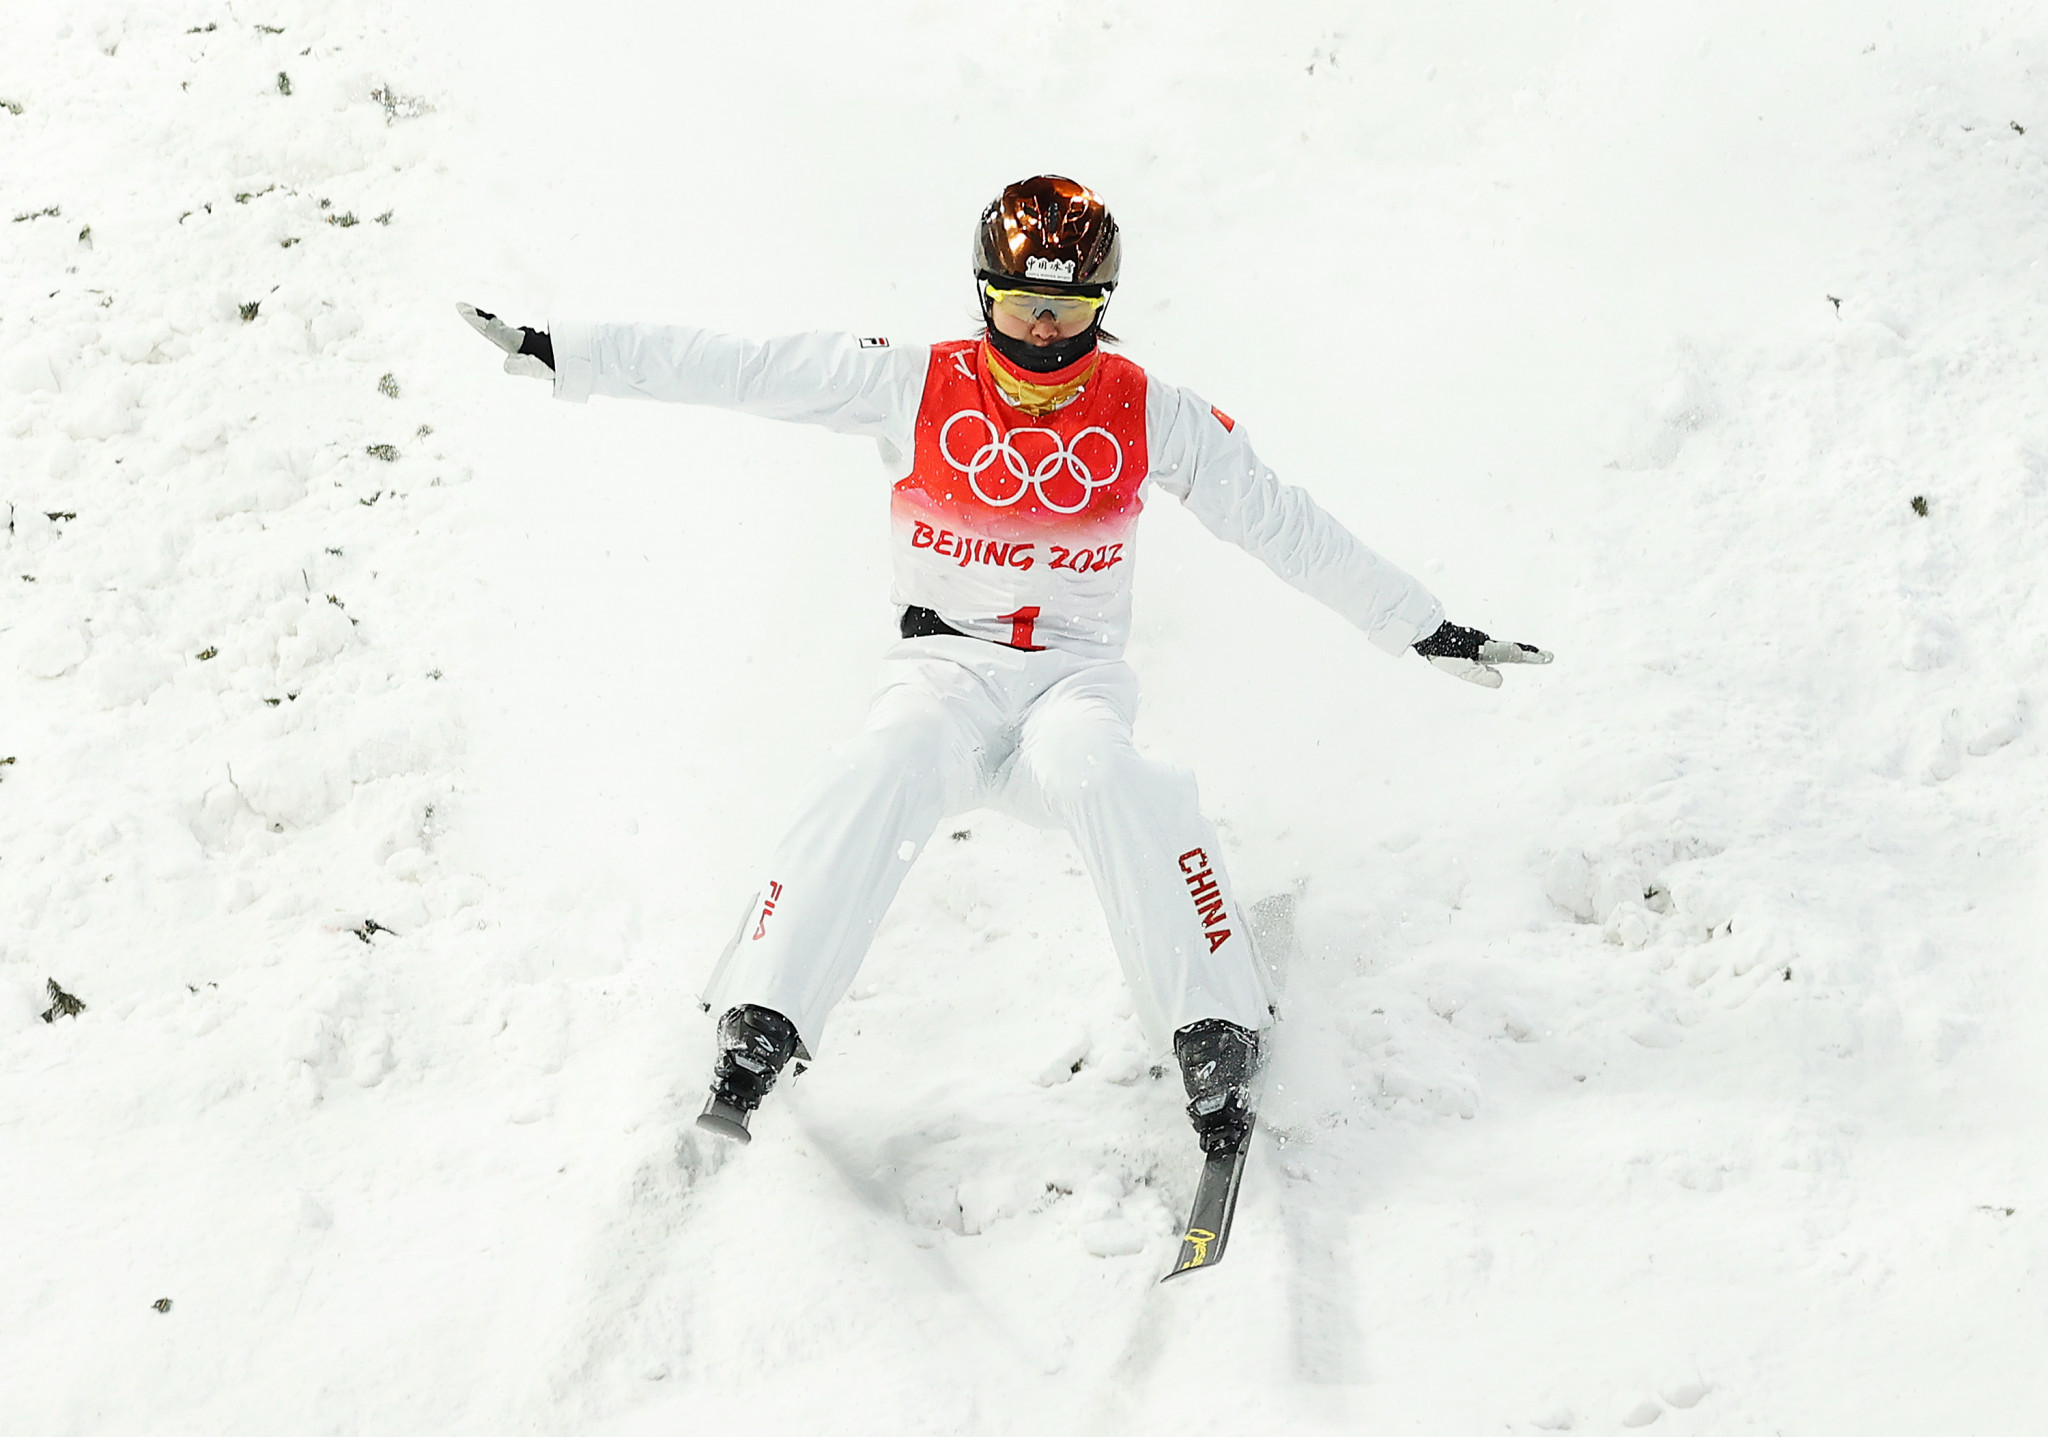 Aerials champion Xu targets historic fifth Winter Olympics at Milan Cortina 2026